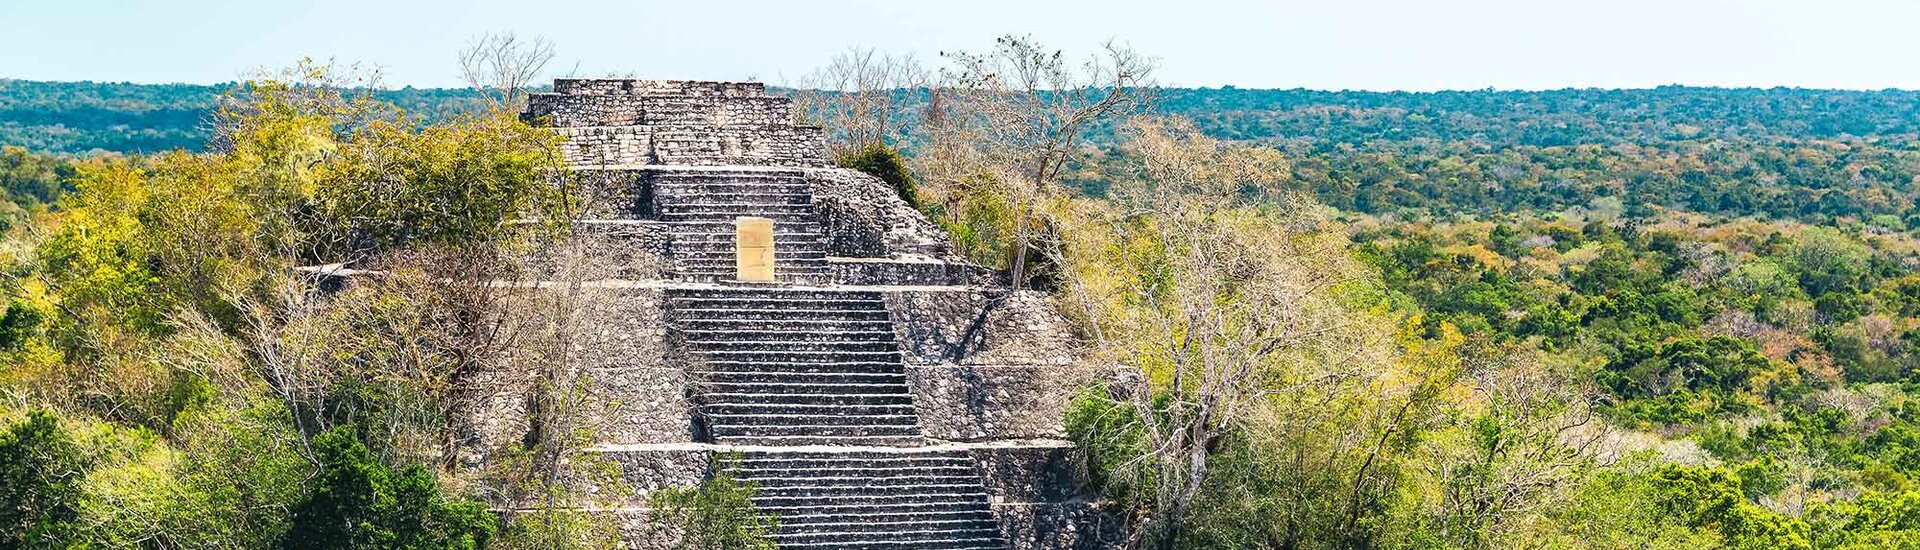 Blick auf die Maya Ruinen von Calakmul